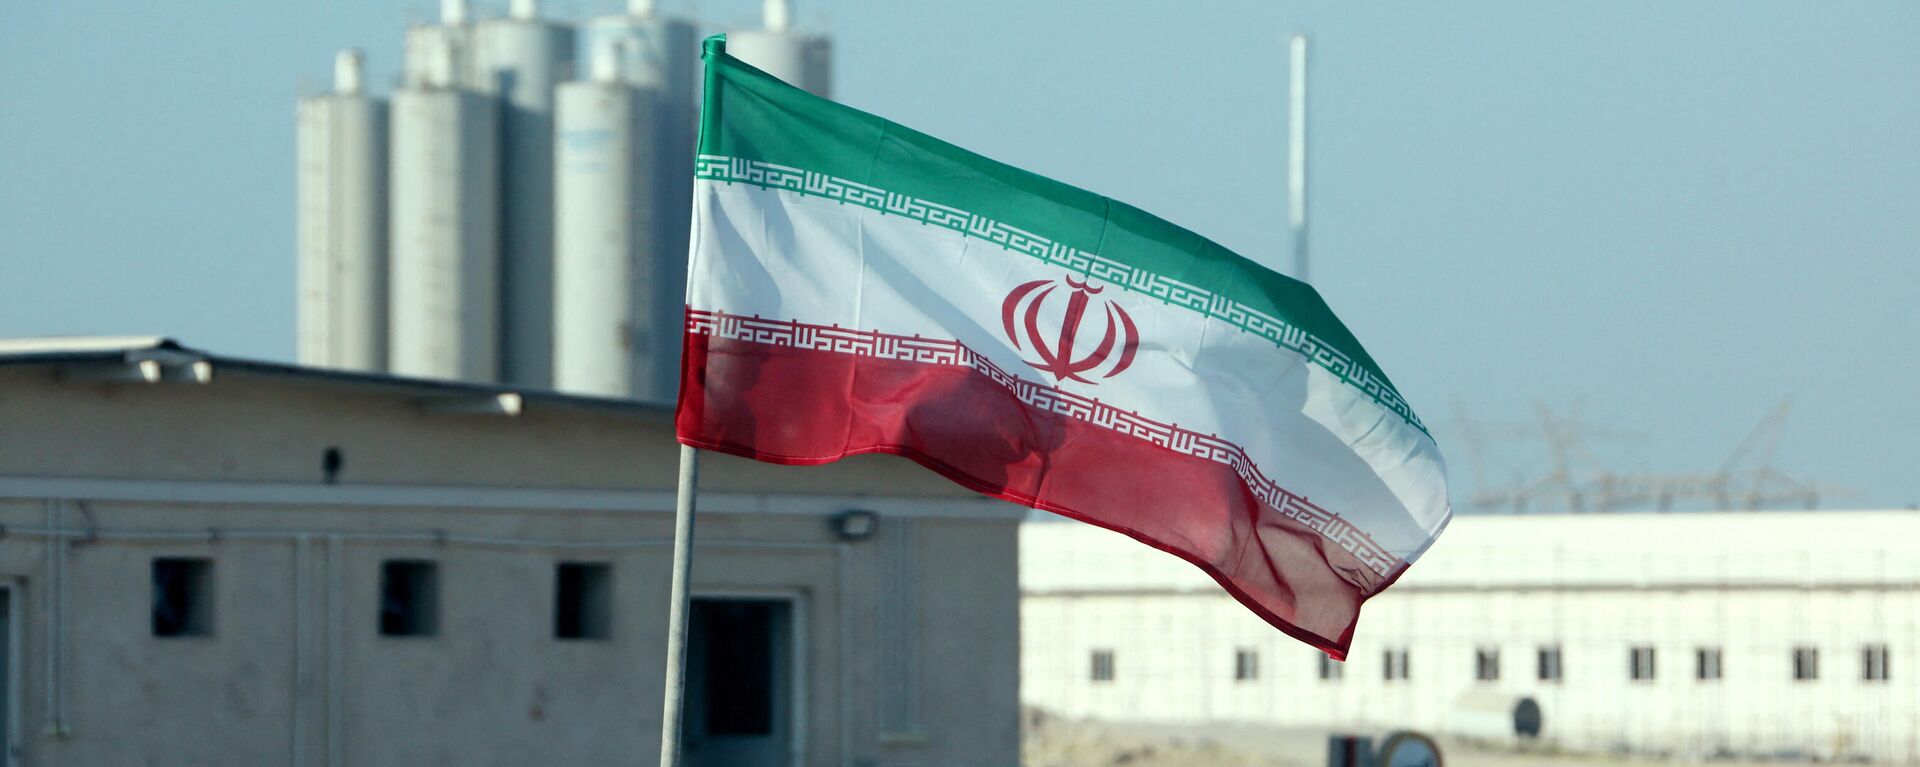 La bandera de Irán frente a una planta nuclear (archivo) - Sputnik Mundo, 1920, 14.06.2022